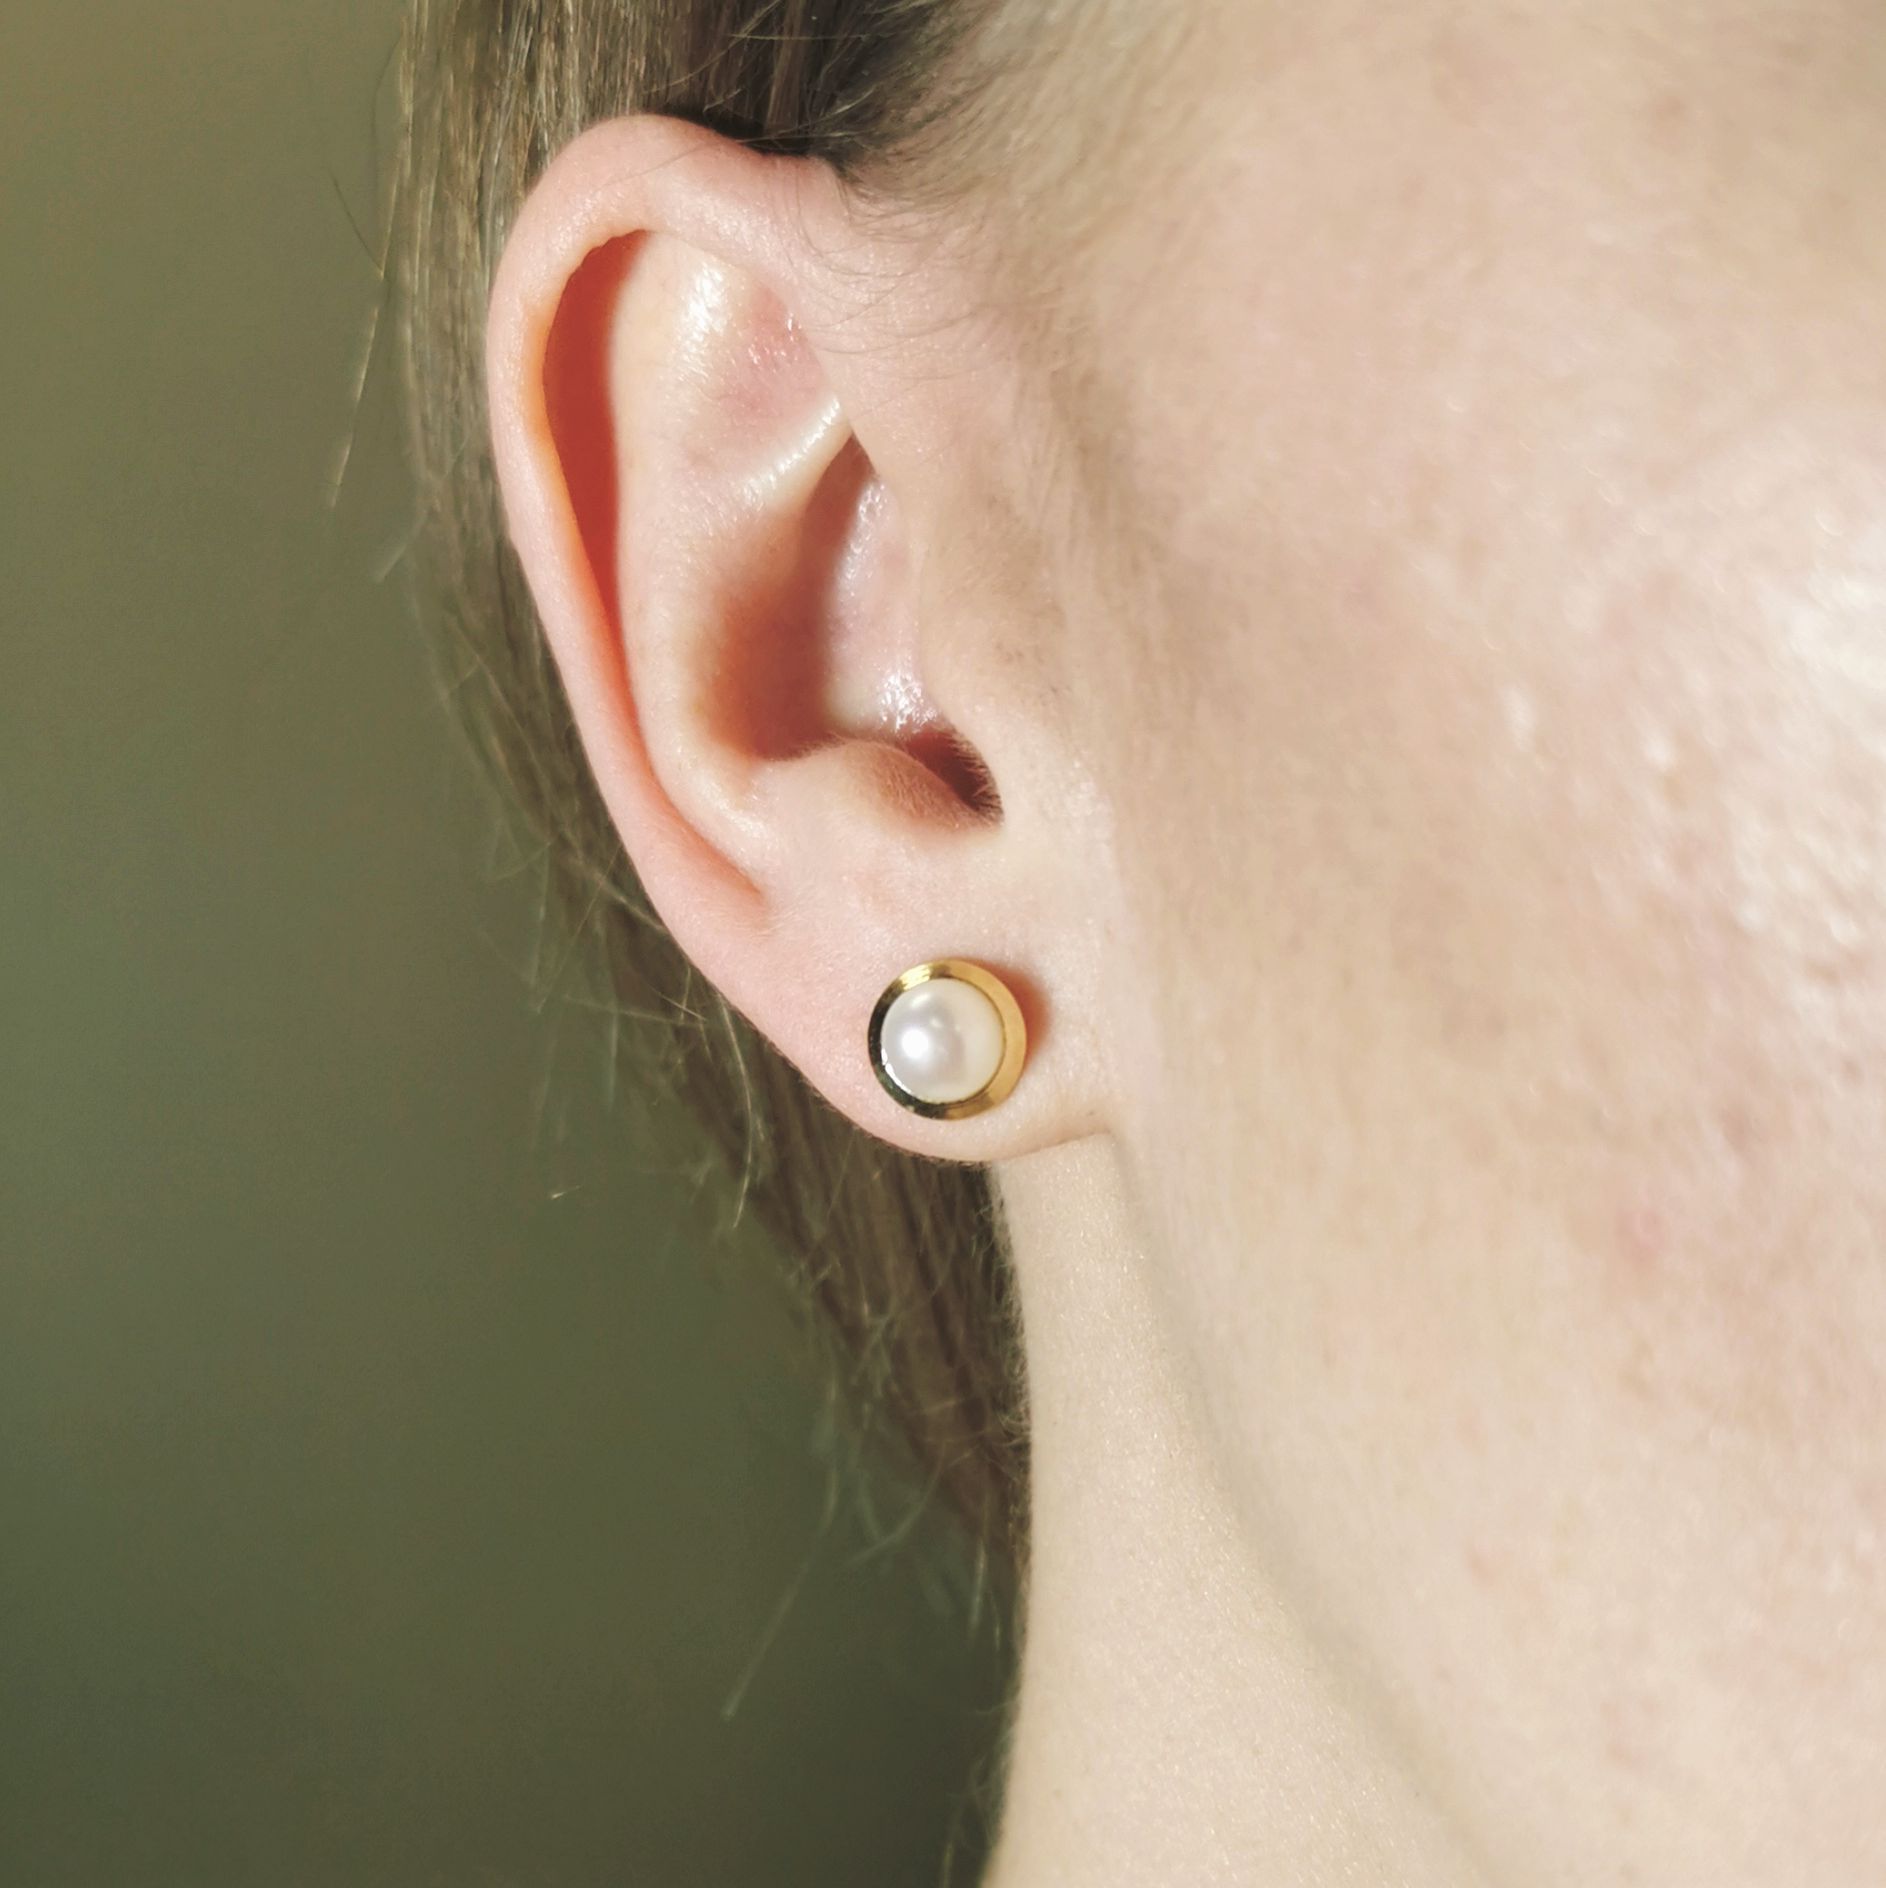 Bezel Set Pearl Stud Earrings | 2.30 ctw |